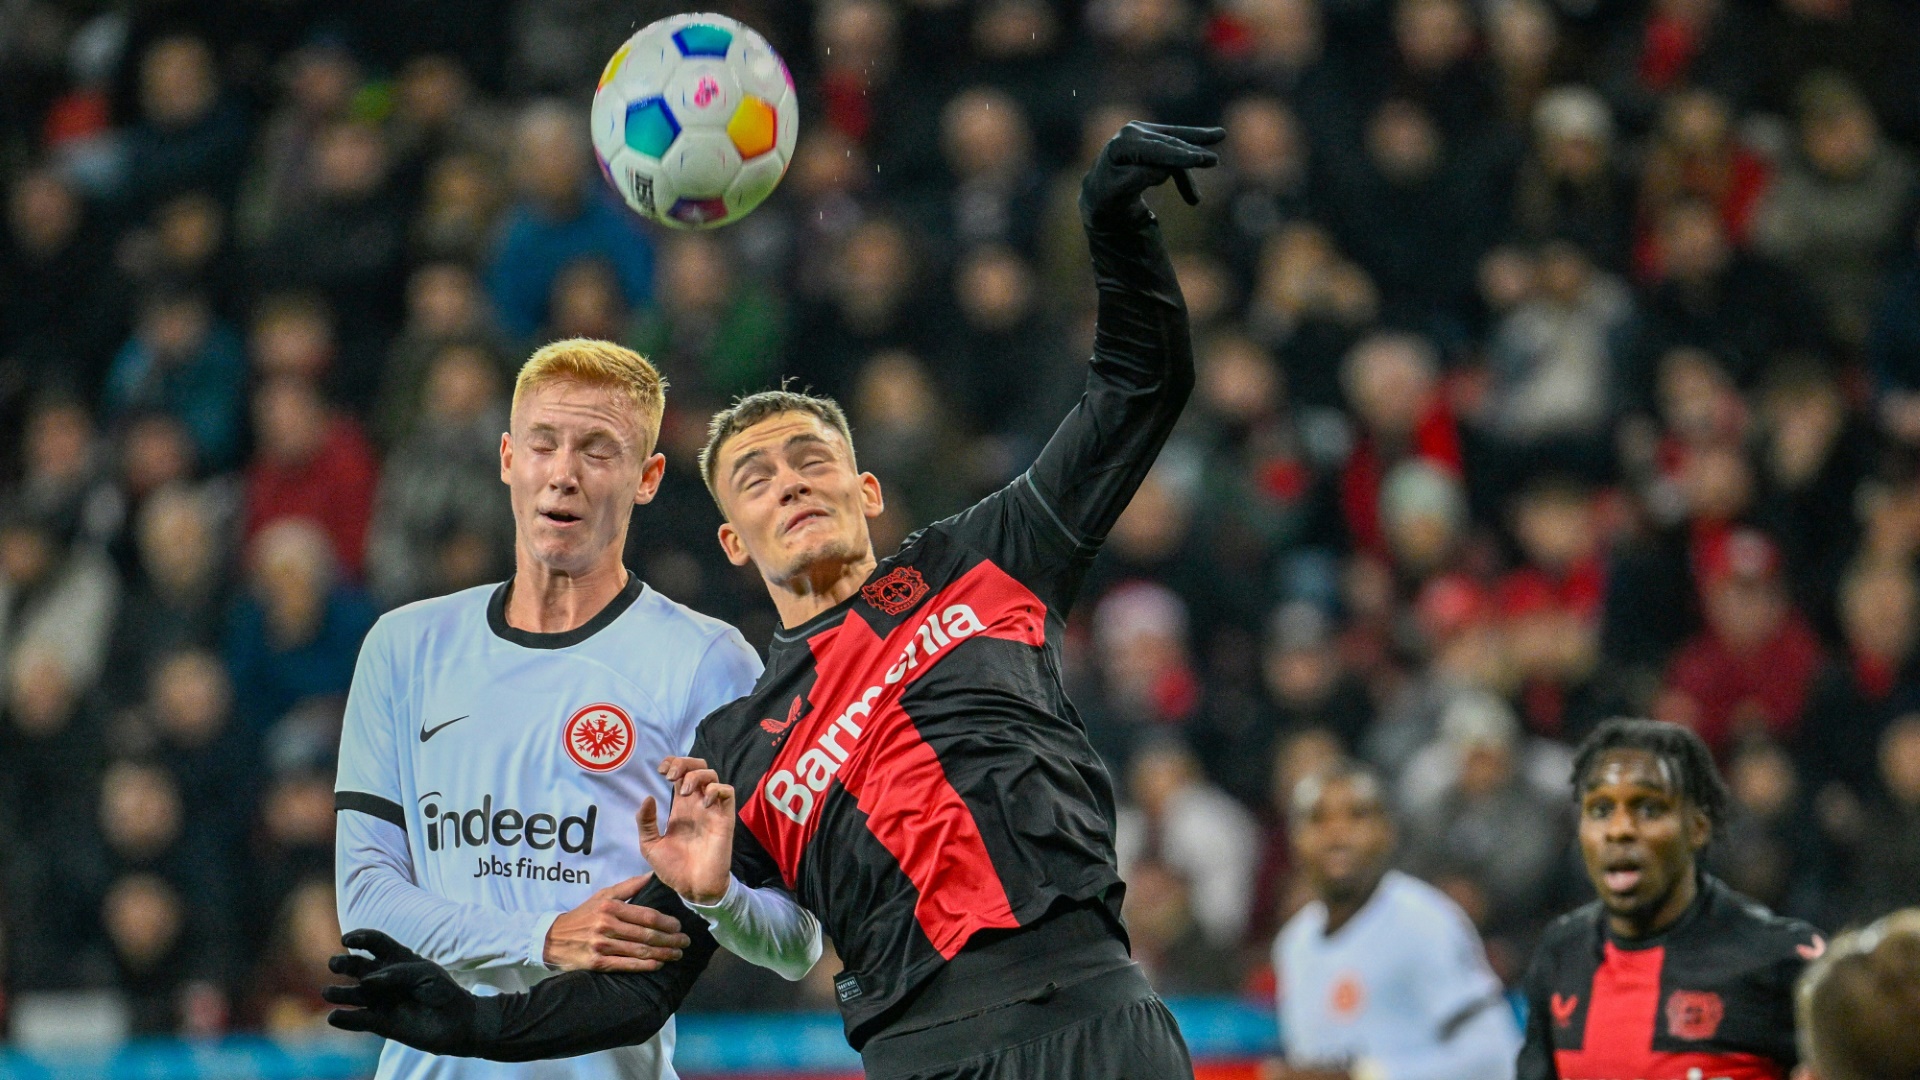 Hugo Larsson abolvierte bisher vier Länderspiele